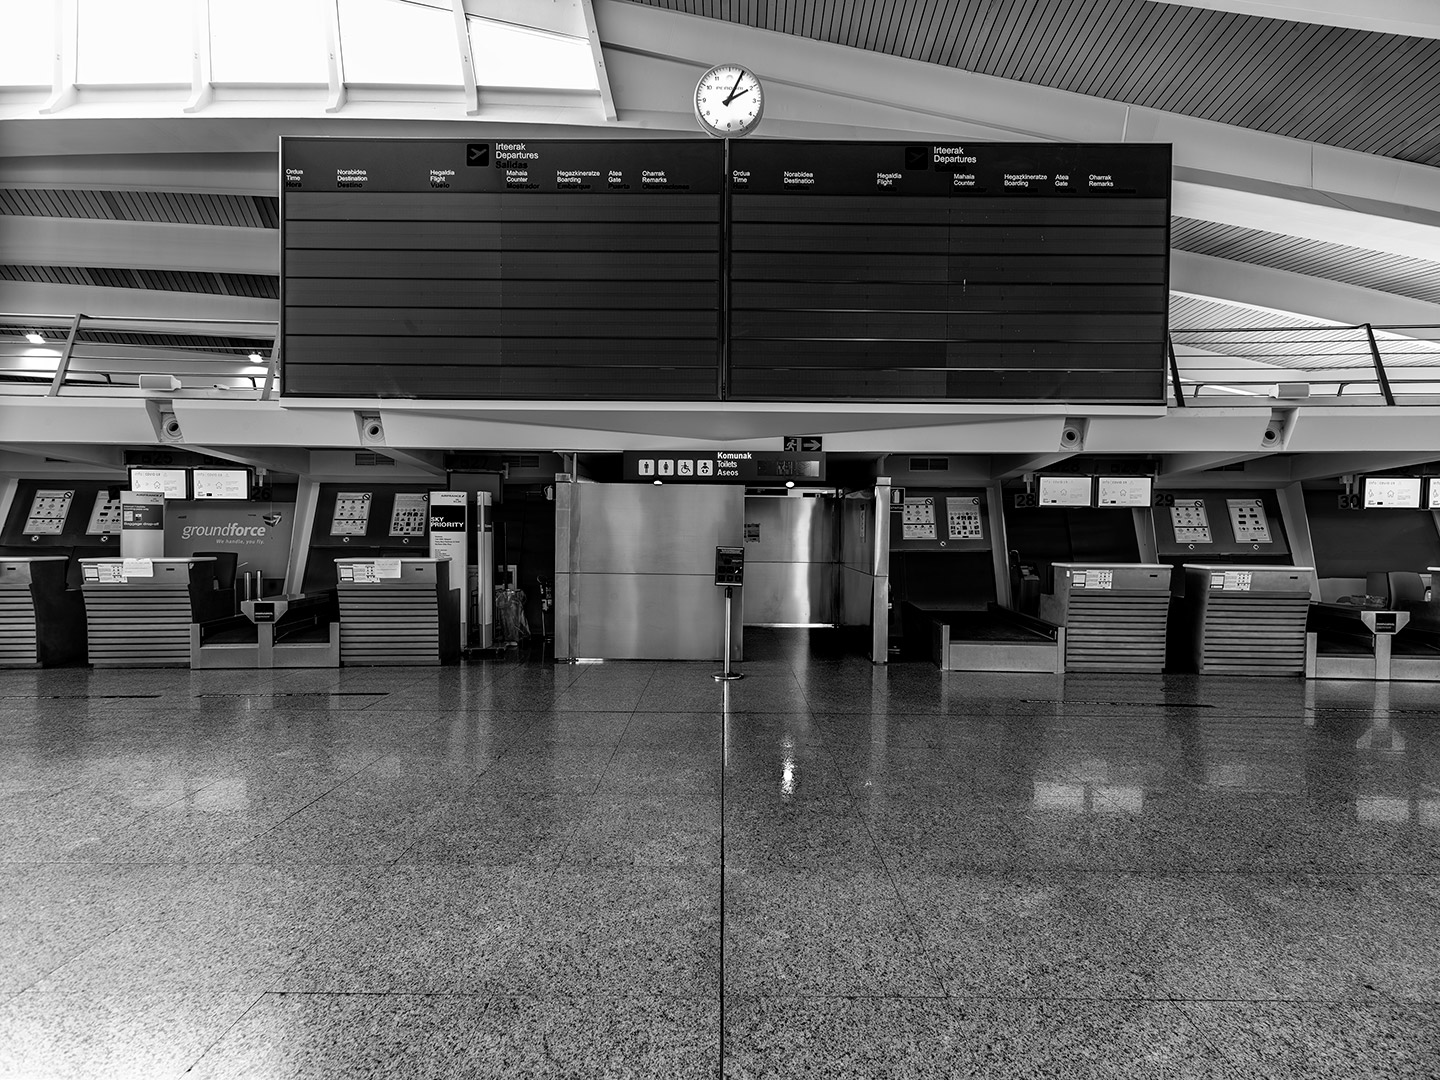 Aeropuerto de Bilbao, 11-04-2020 - Impresión directa sobre Dibond